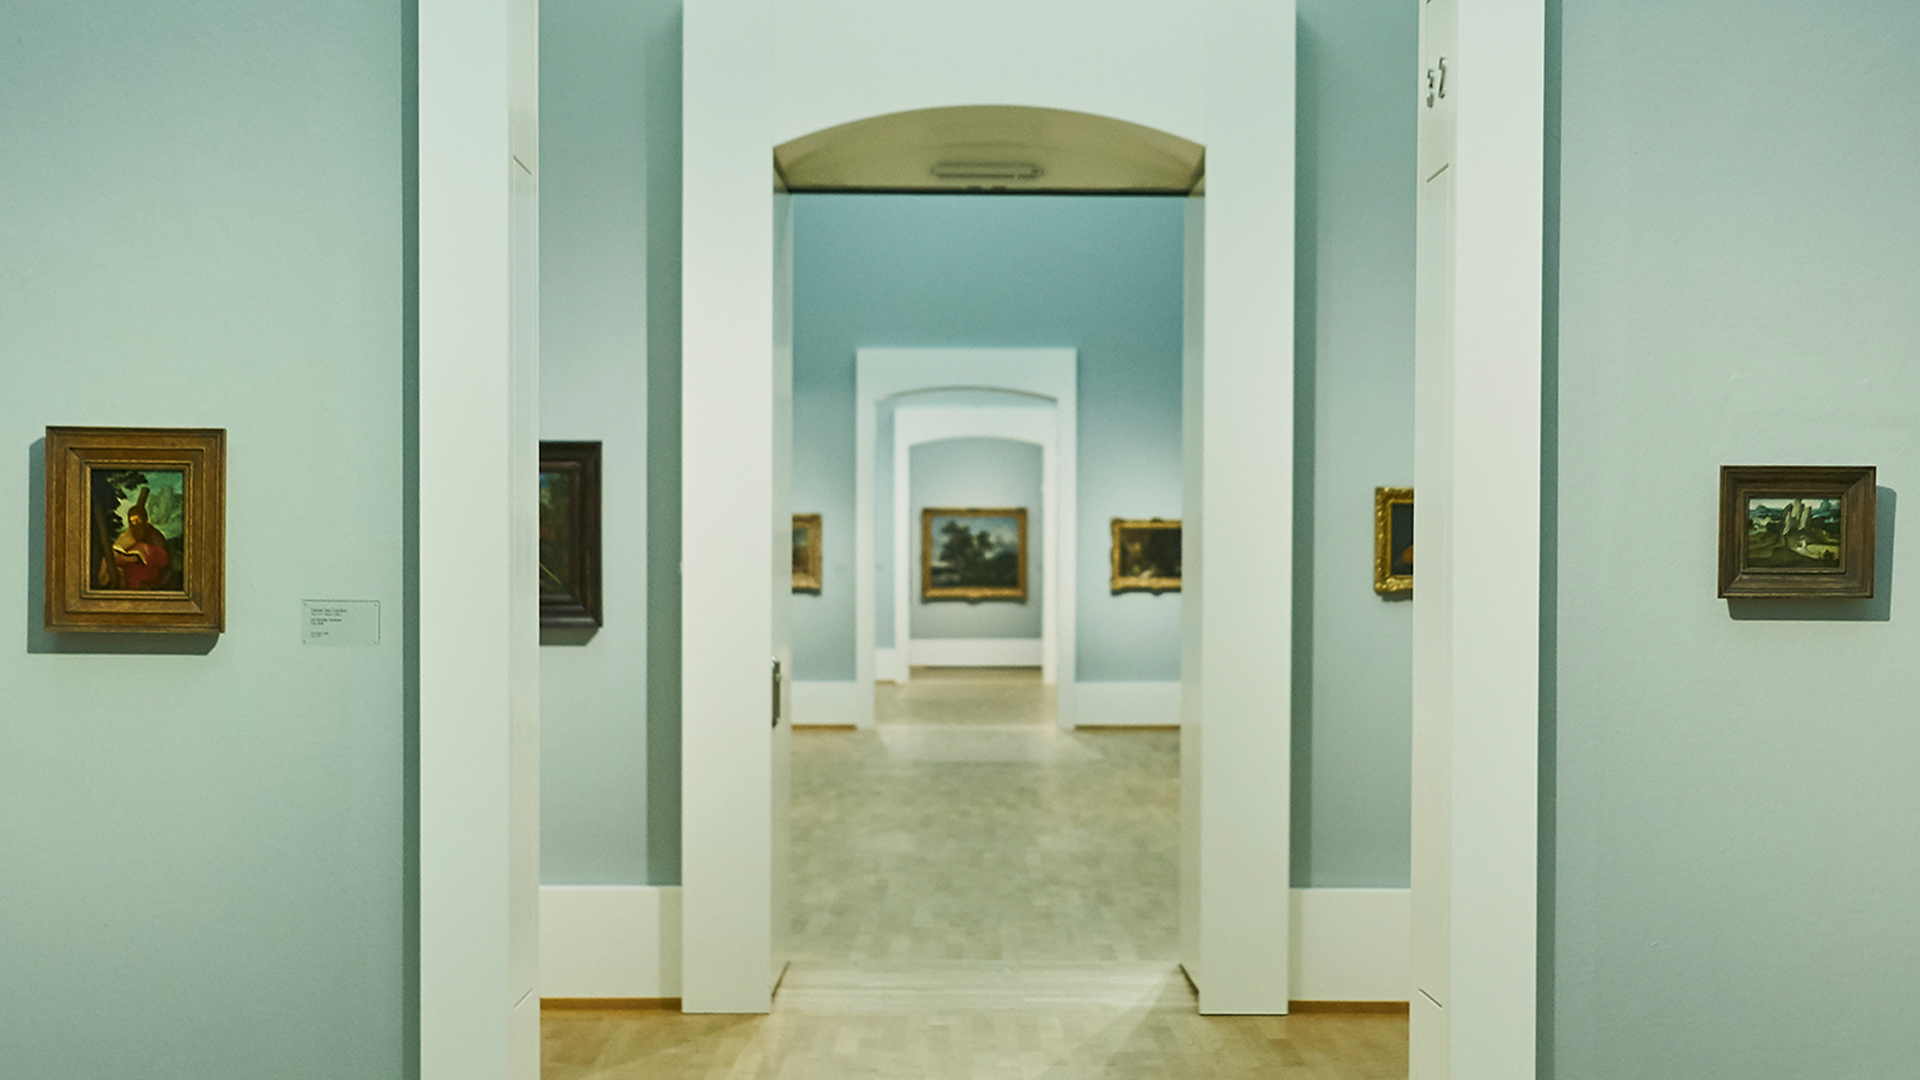 Blick in die Raumflucht der Kunsthalle Karlsruhe. Die Wände sind hellblau und es hängen Kunstwerke an den Wänden.